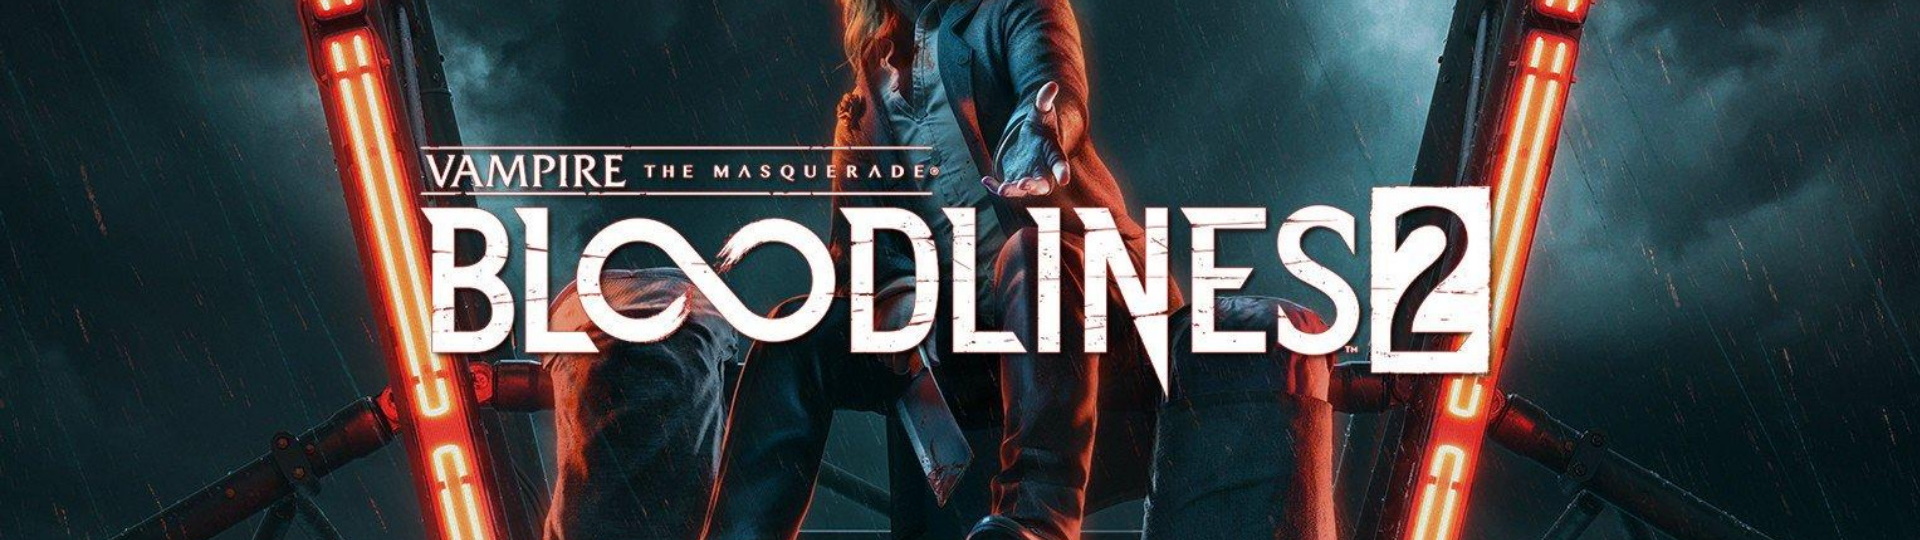 Vampire: The Masquerade - Bloodlines 2 vrací peníze | Novinky